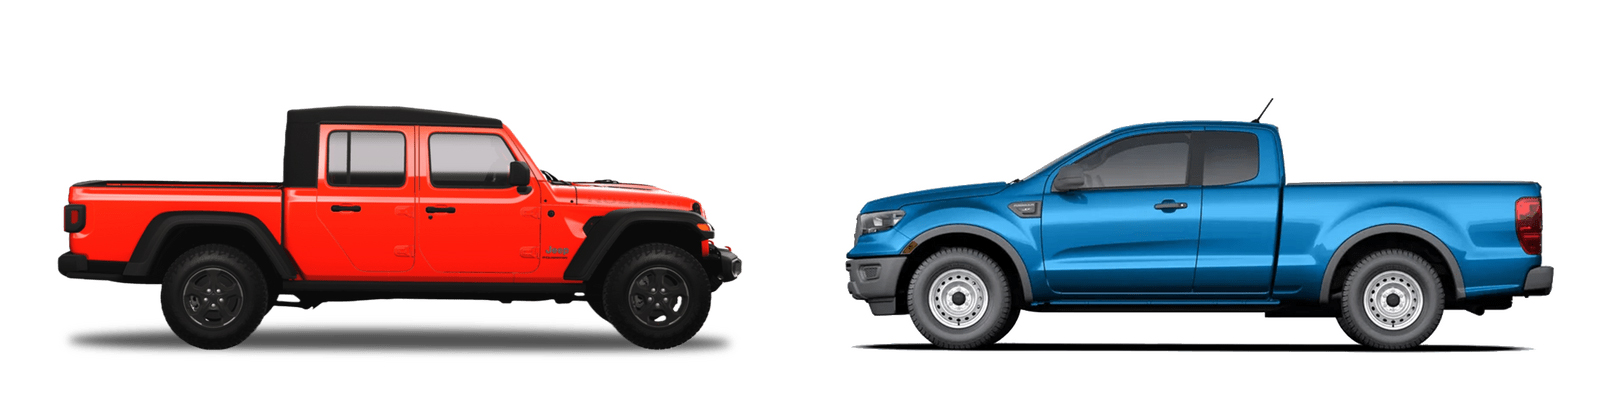 Jeep Gladiator vs. Ford Ranger hero